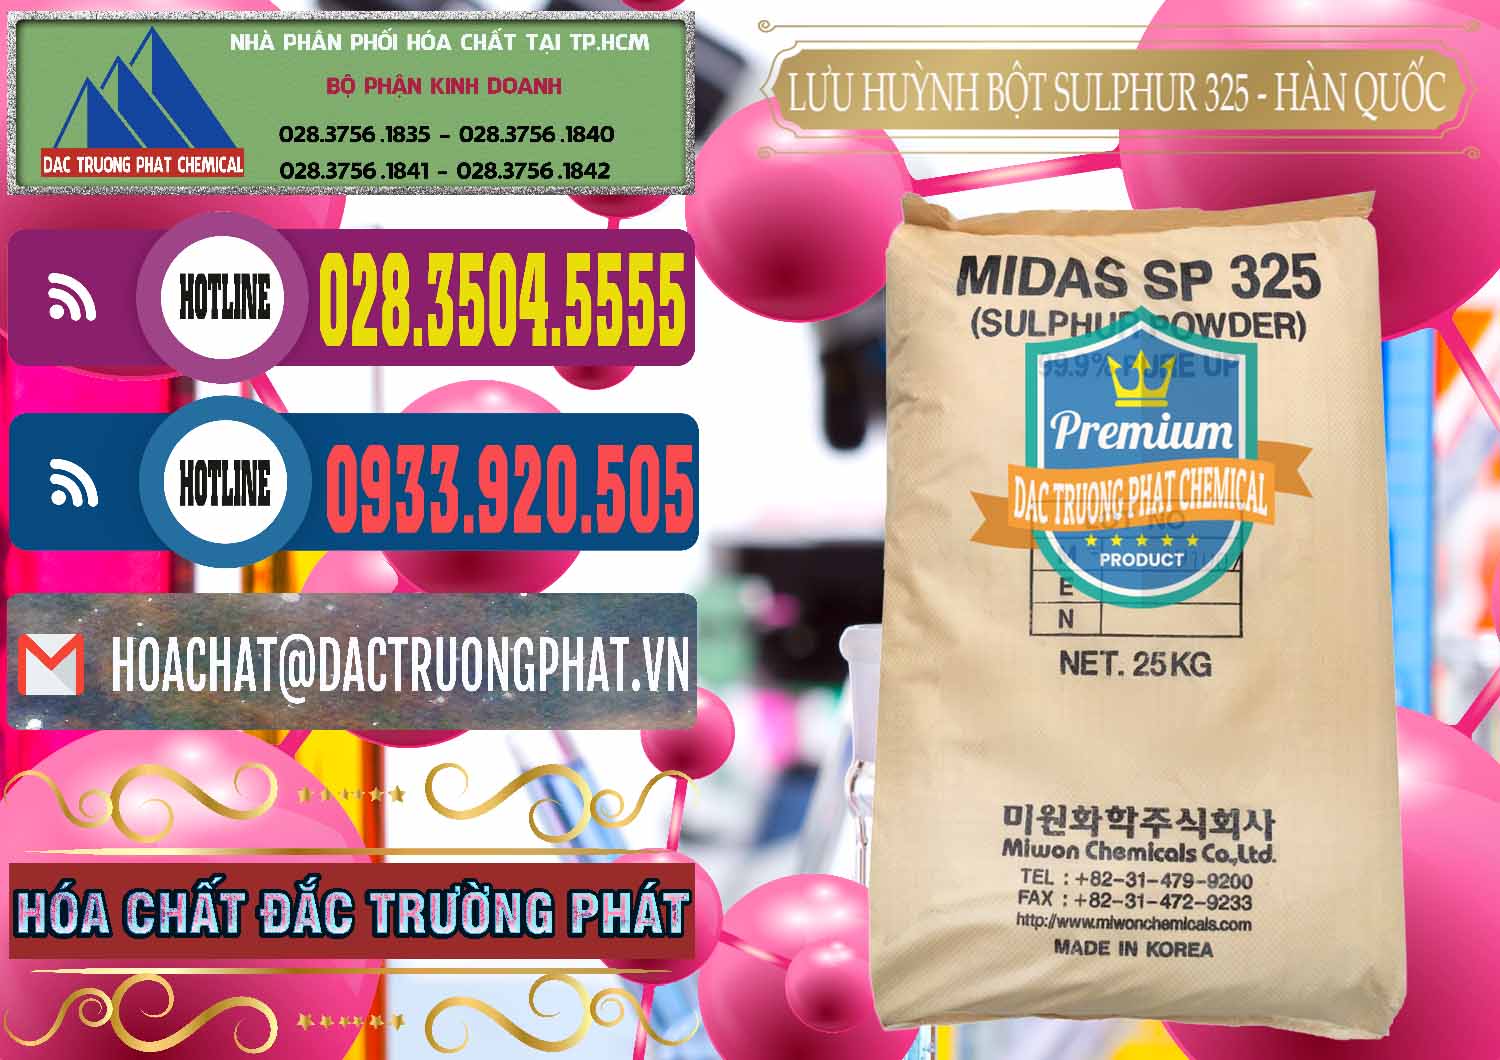 Cty bán và cung ứng Lưu huỳnh Bột - Sulfur Powder Midas SP 325 Hàn Quốc Korea - 0198 - Cty bán - phân phối hóa chất tại TP.HCM - muabanhoachat.com.vn